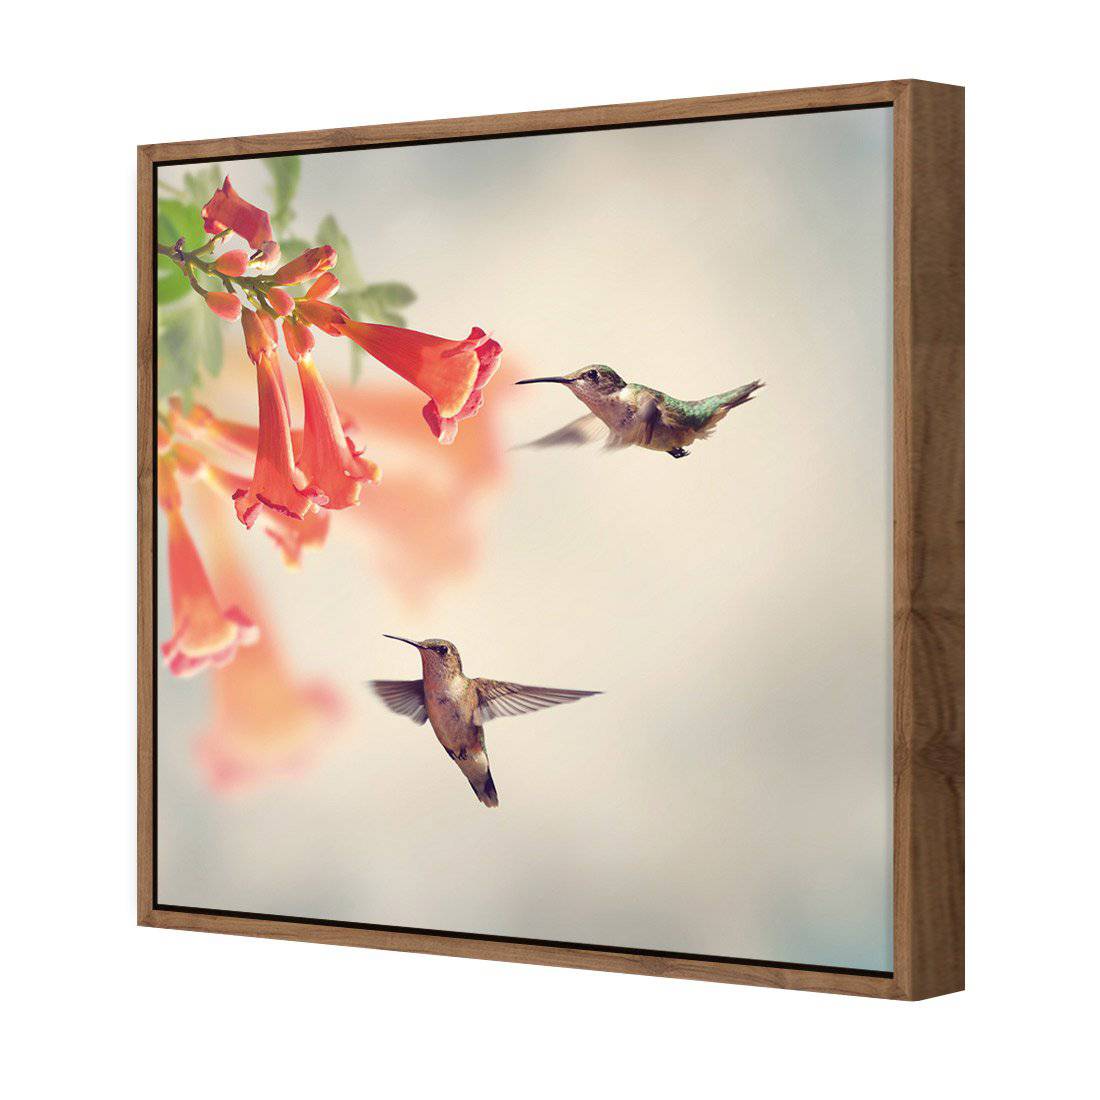 Hummingbird Hover Canvas Art-Canvas-Wall Art Designs-30x30cm-Canvas - Natural Frame-Wall Art Designs